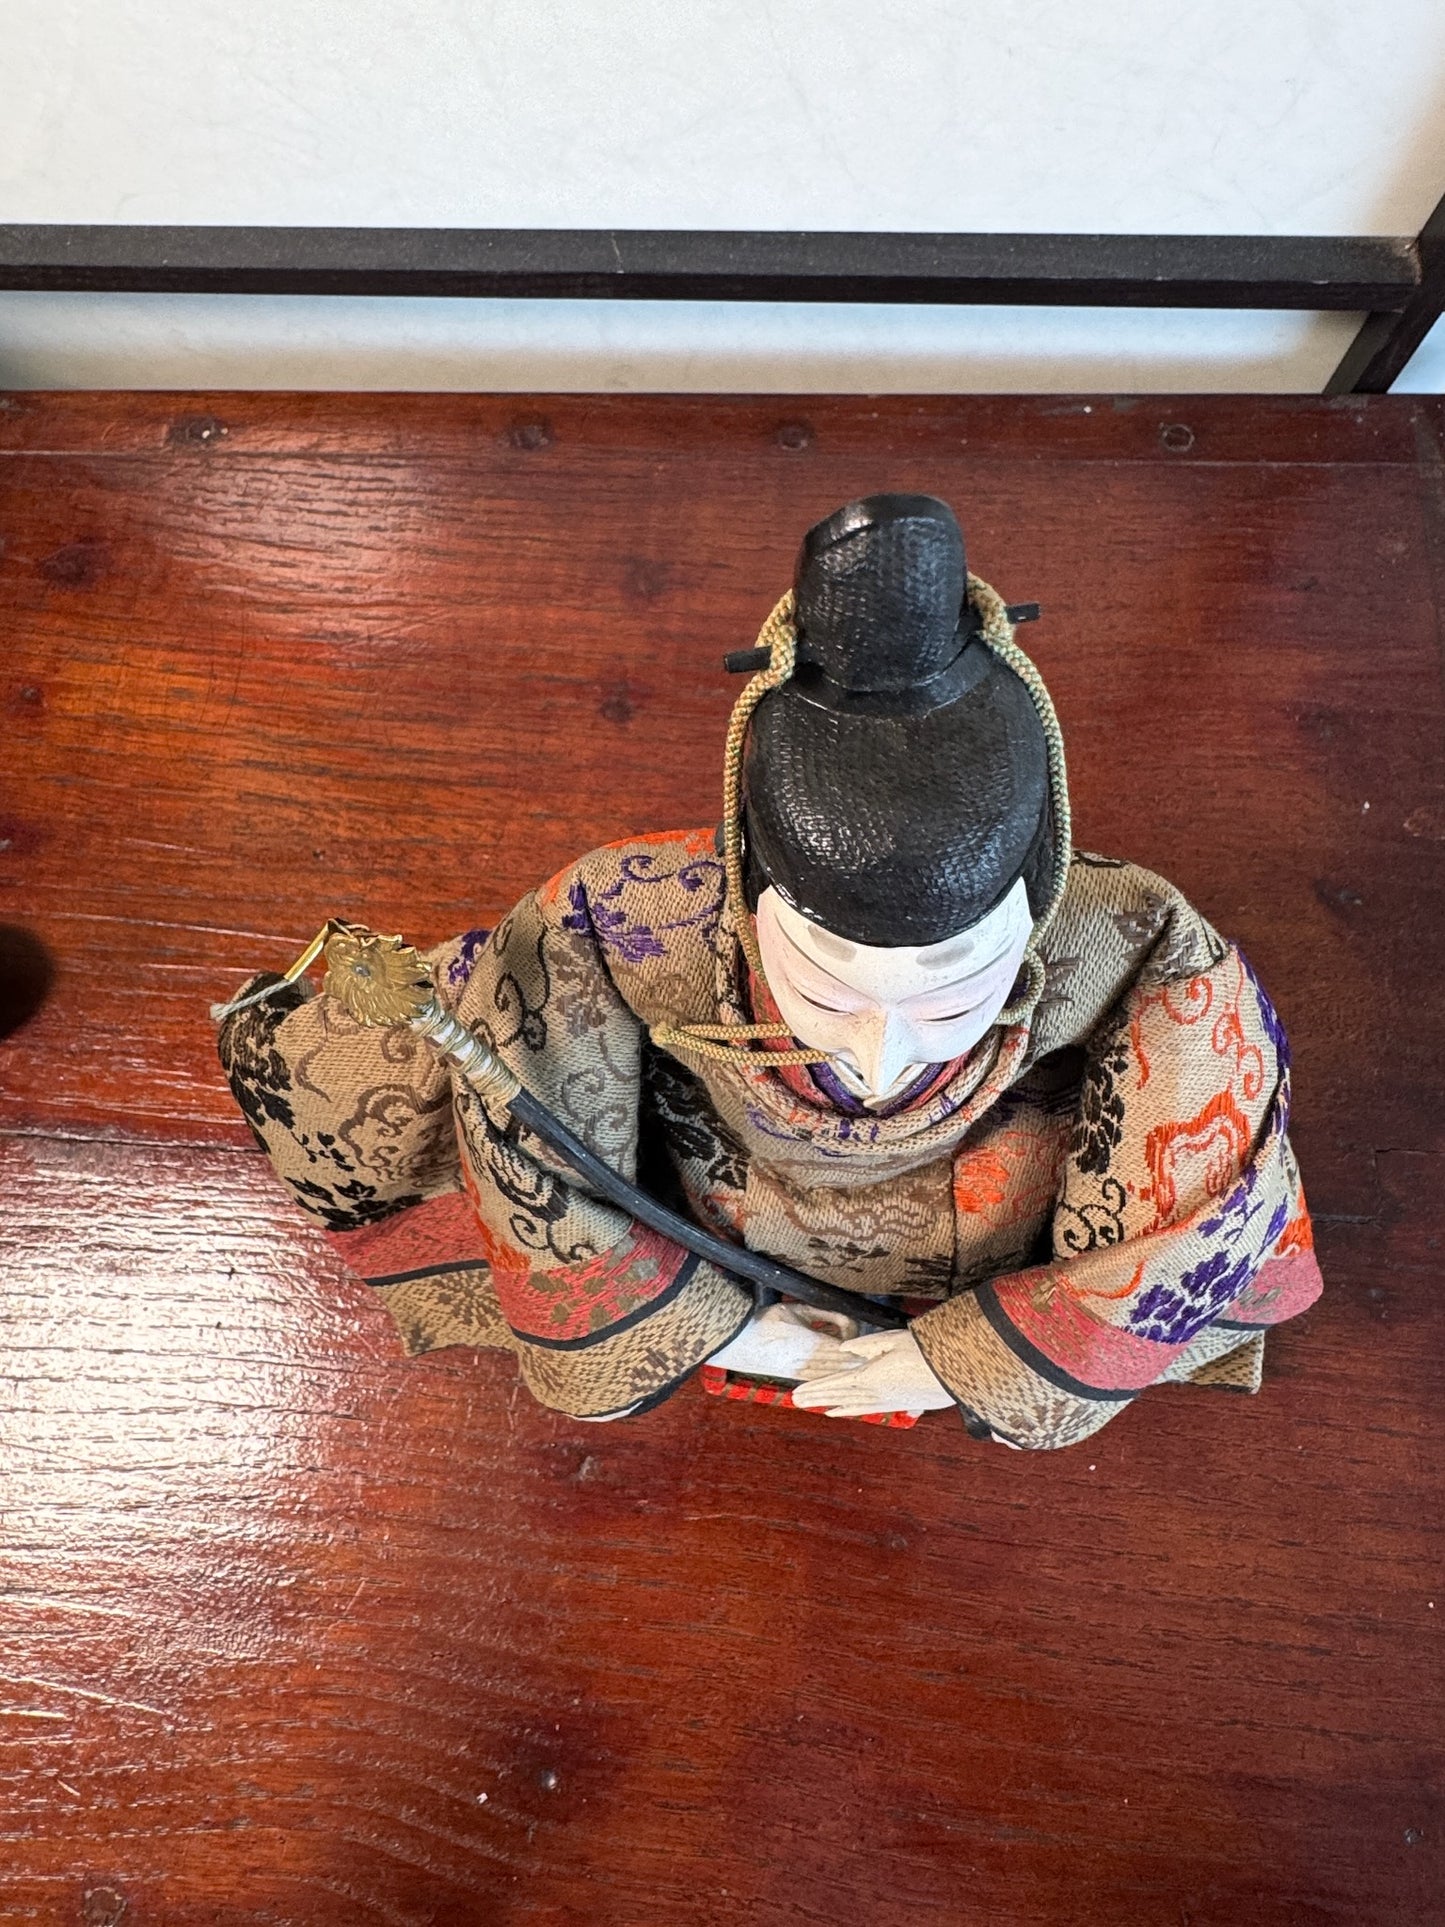 poupée japonaise traditionnelle samourai seigneur, vu de dessus